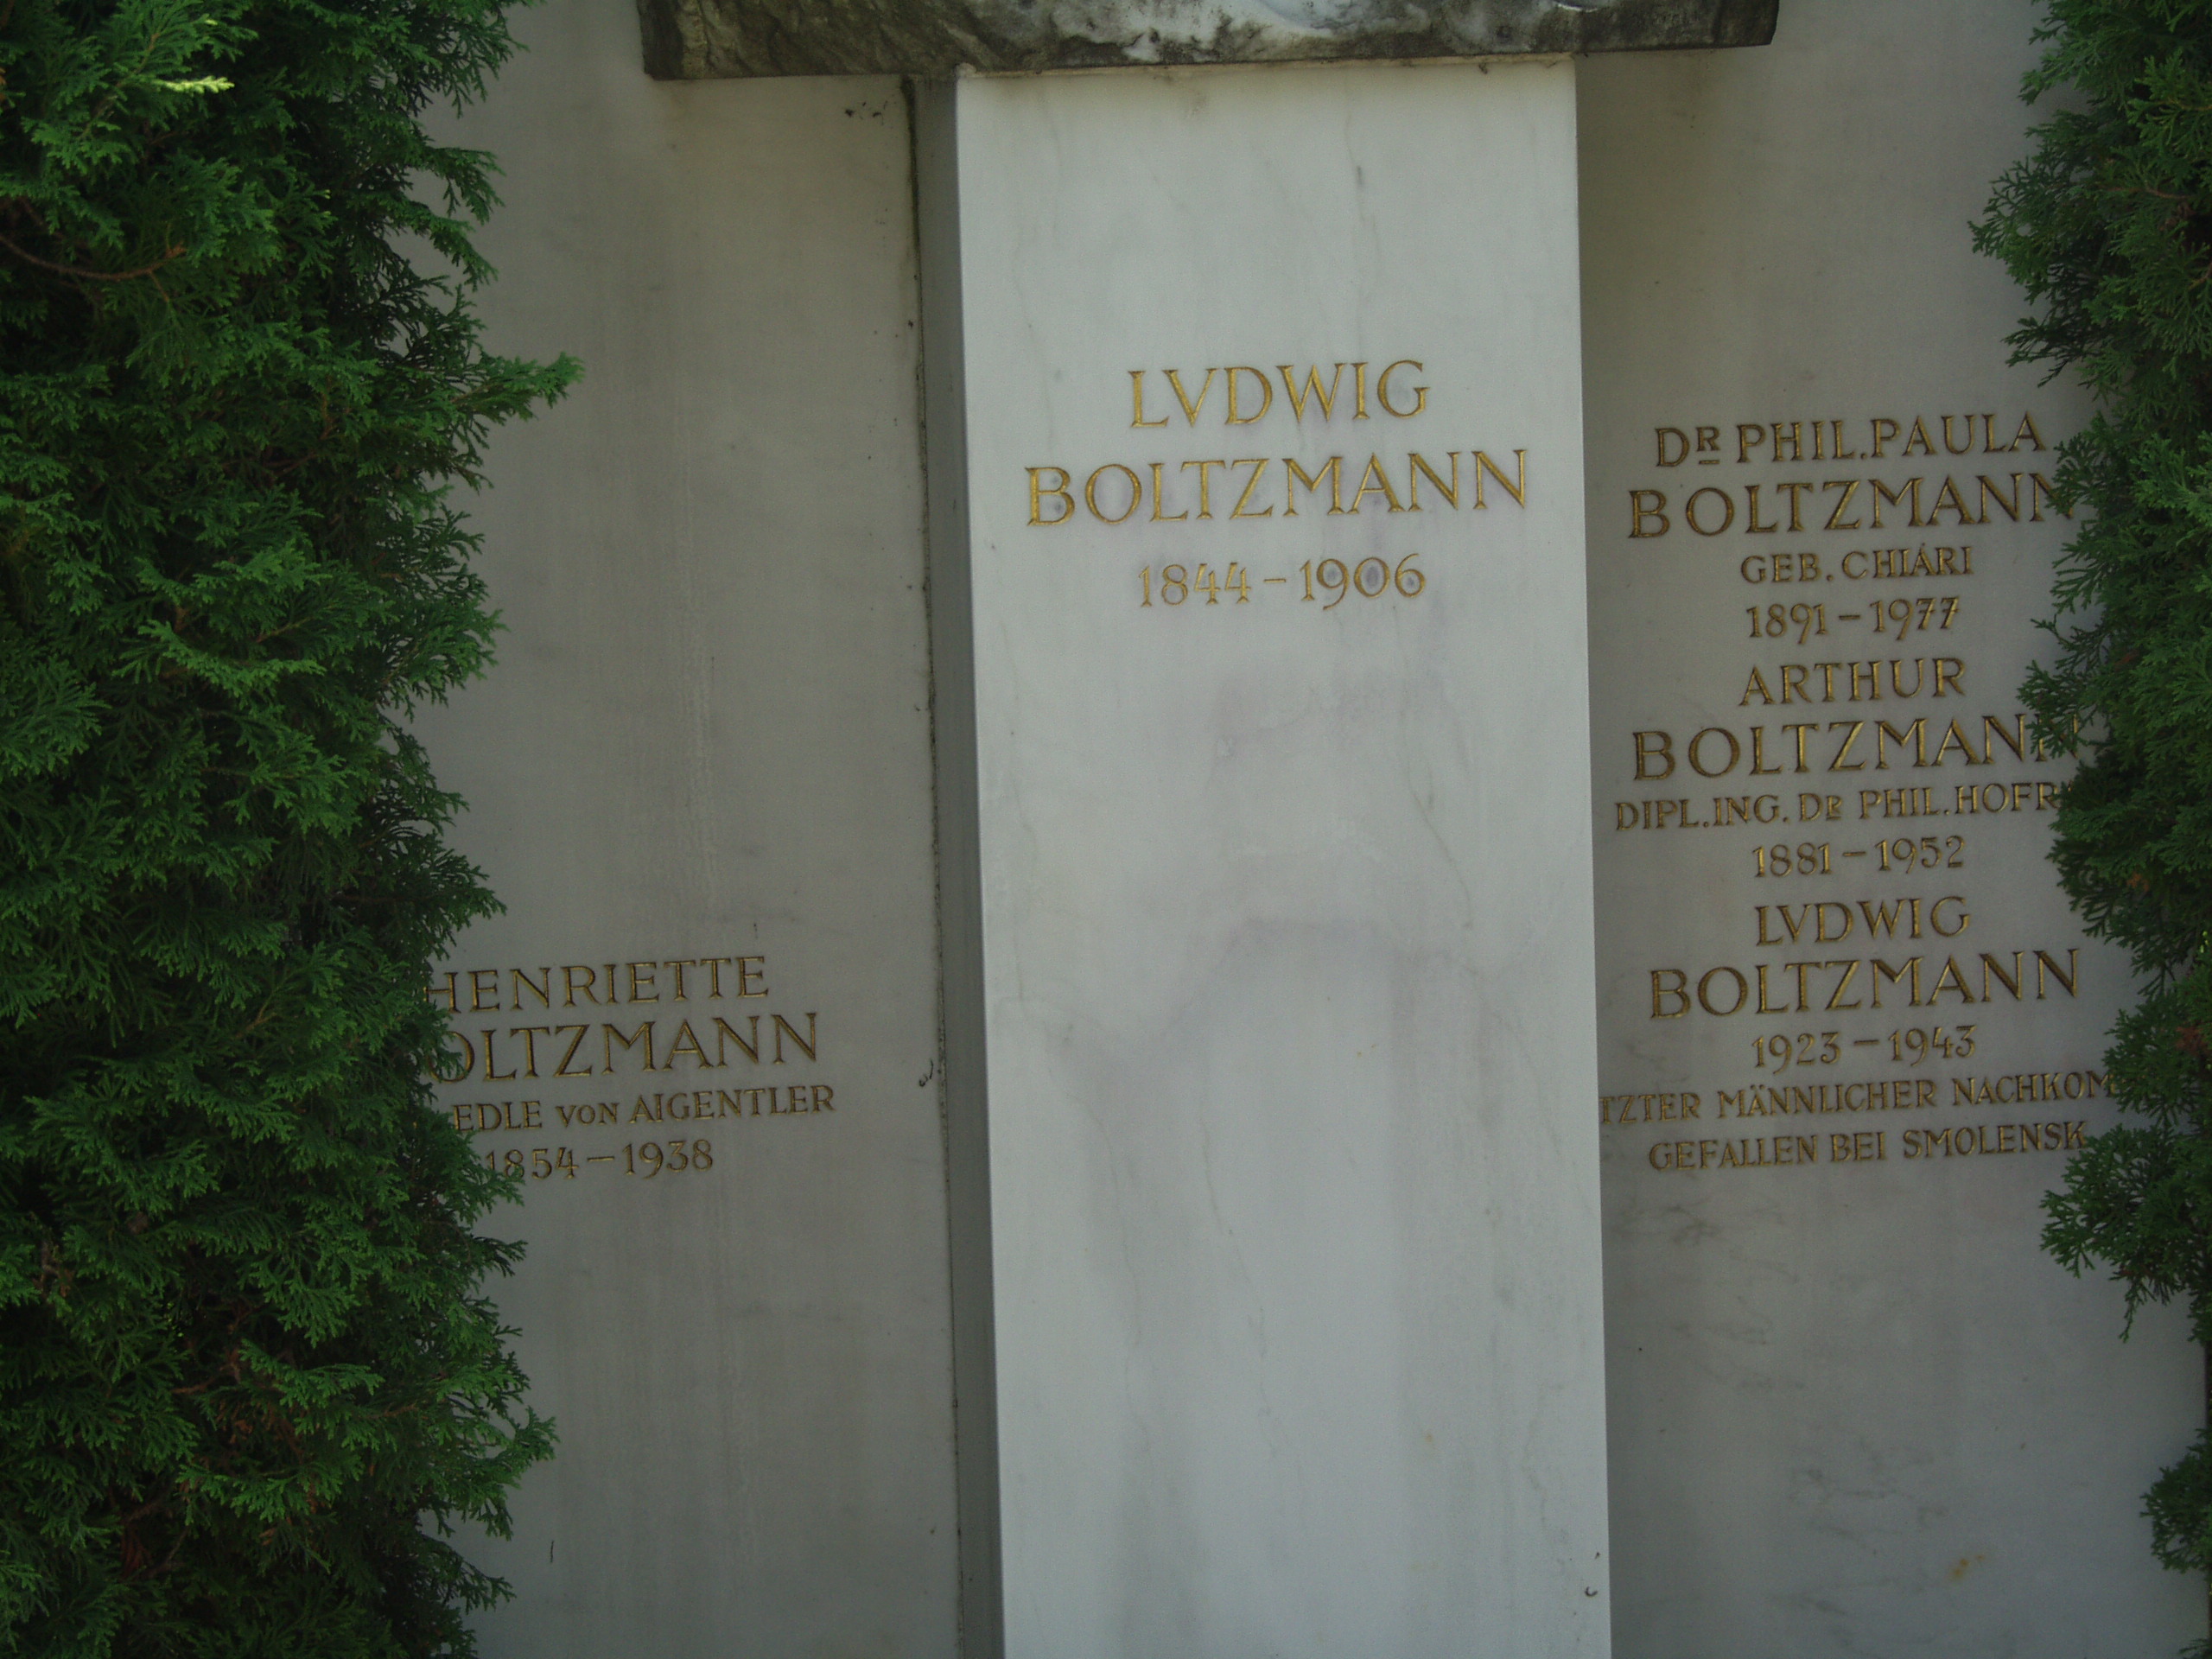 
Vienna, Austria.
Boltzmann's Tomb in the Zentralfriedhof (Central Cemetary).
The Tomb is in Gruppe 14 C Grab No 1 (groupe 14 grave number 1).
Photos by
Tom Schneider or of him by Gerd Muller.
2002 July 14.
This image:
Stone carving below Boltzmann's bust
in three vertical sections:
1. HENRIETTE BOLTZMANN
(lost)EDLE von AIGENTLER
1854-1938
2. LVDWIG BOLTZMANN 1844-1906.
3. Dr PHIL.PAULA
BOLTZMANN
GEB. CHIARI
1891-1977
ARTHUR
BOLTZMANN
DIPL.ING.Dr PHIL. HOFR(lost)
1881-1952
LVDWIG
BOLTZMANN
1923-1943
(lost)TZTER MANNLICHER NACHKOM(lost)
GEFALLEN BEI SMOLENSK.
(a href =
